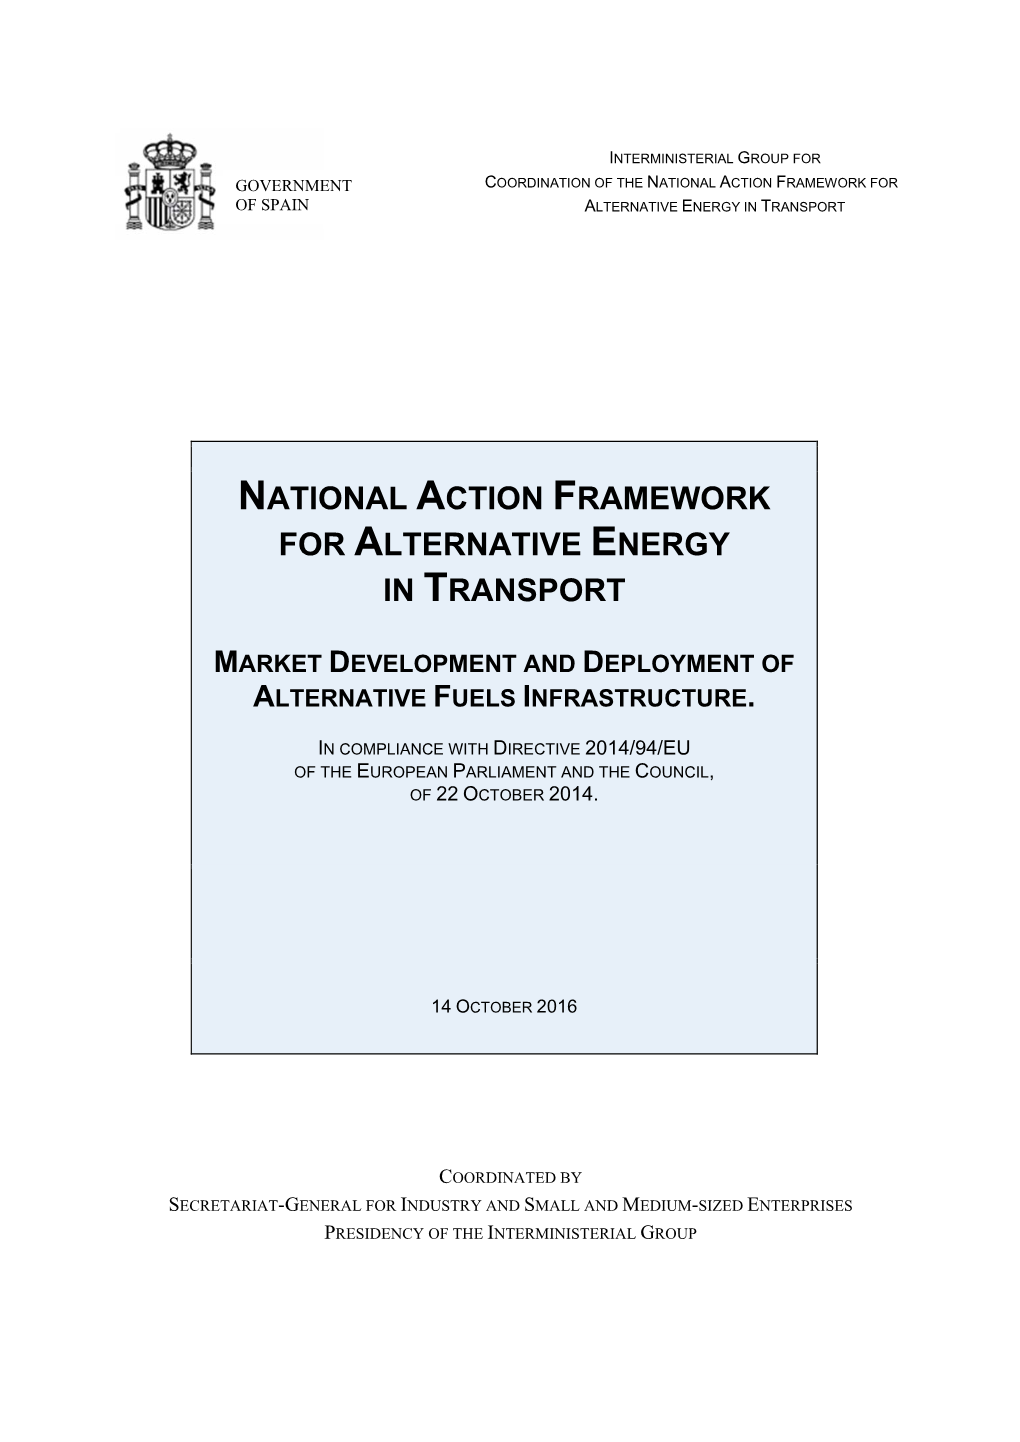 Spanish National Action Framework for Alternative Energy in Transport